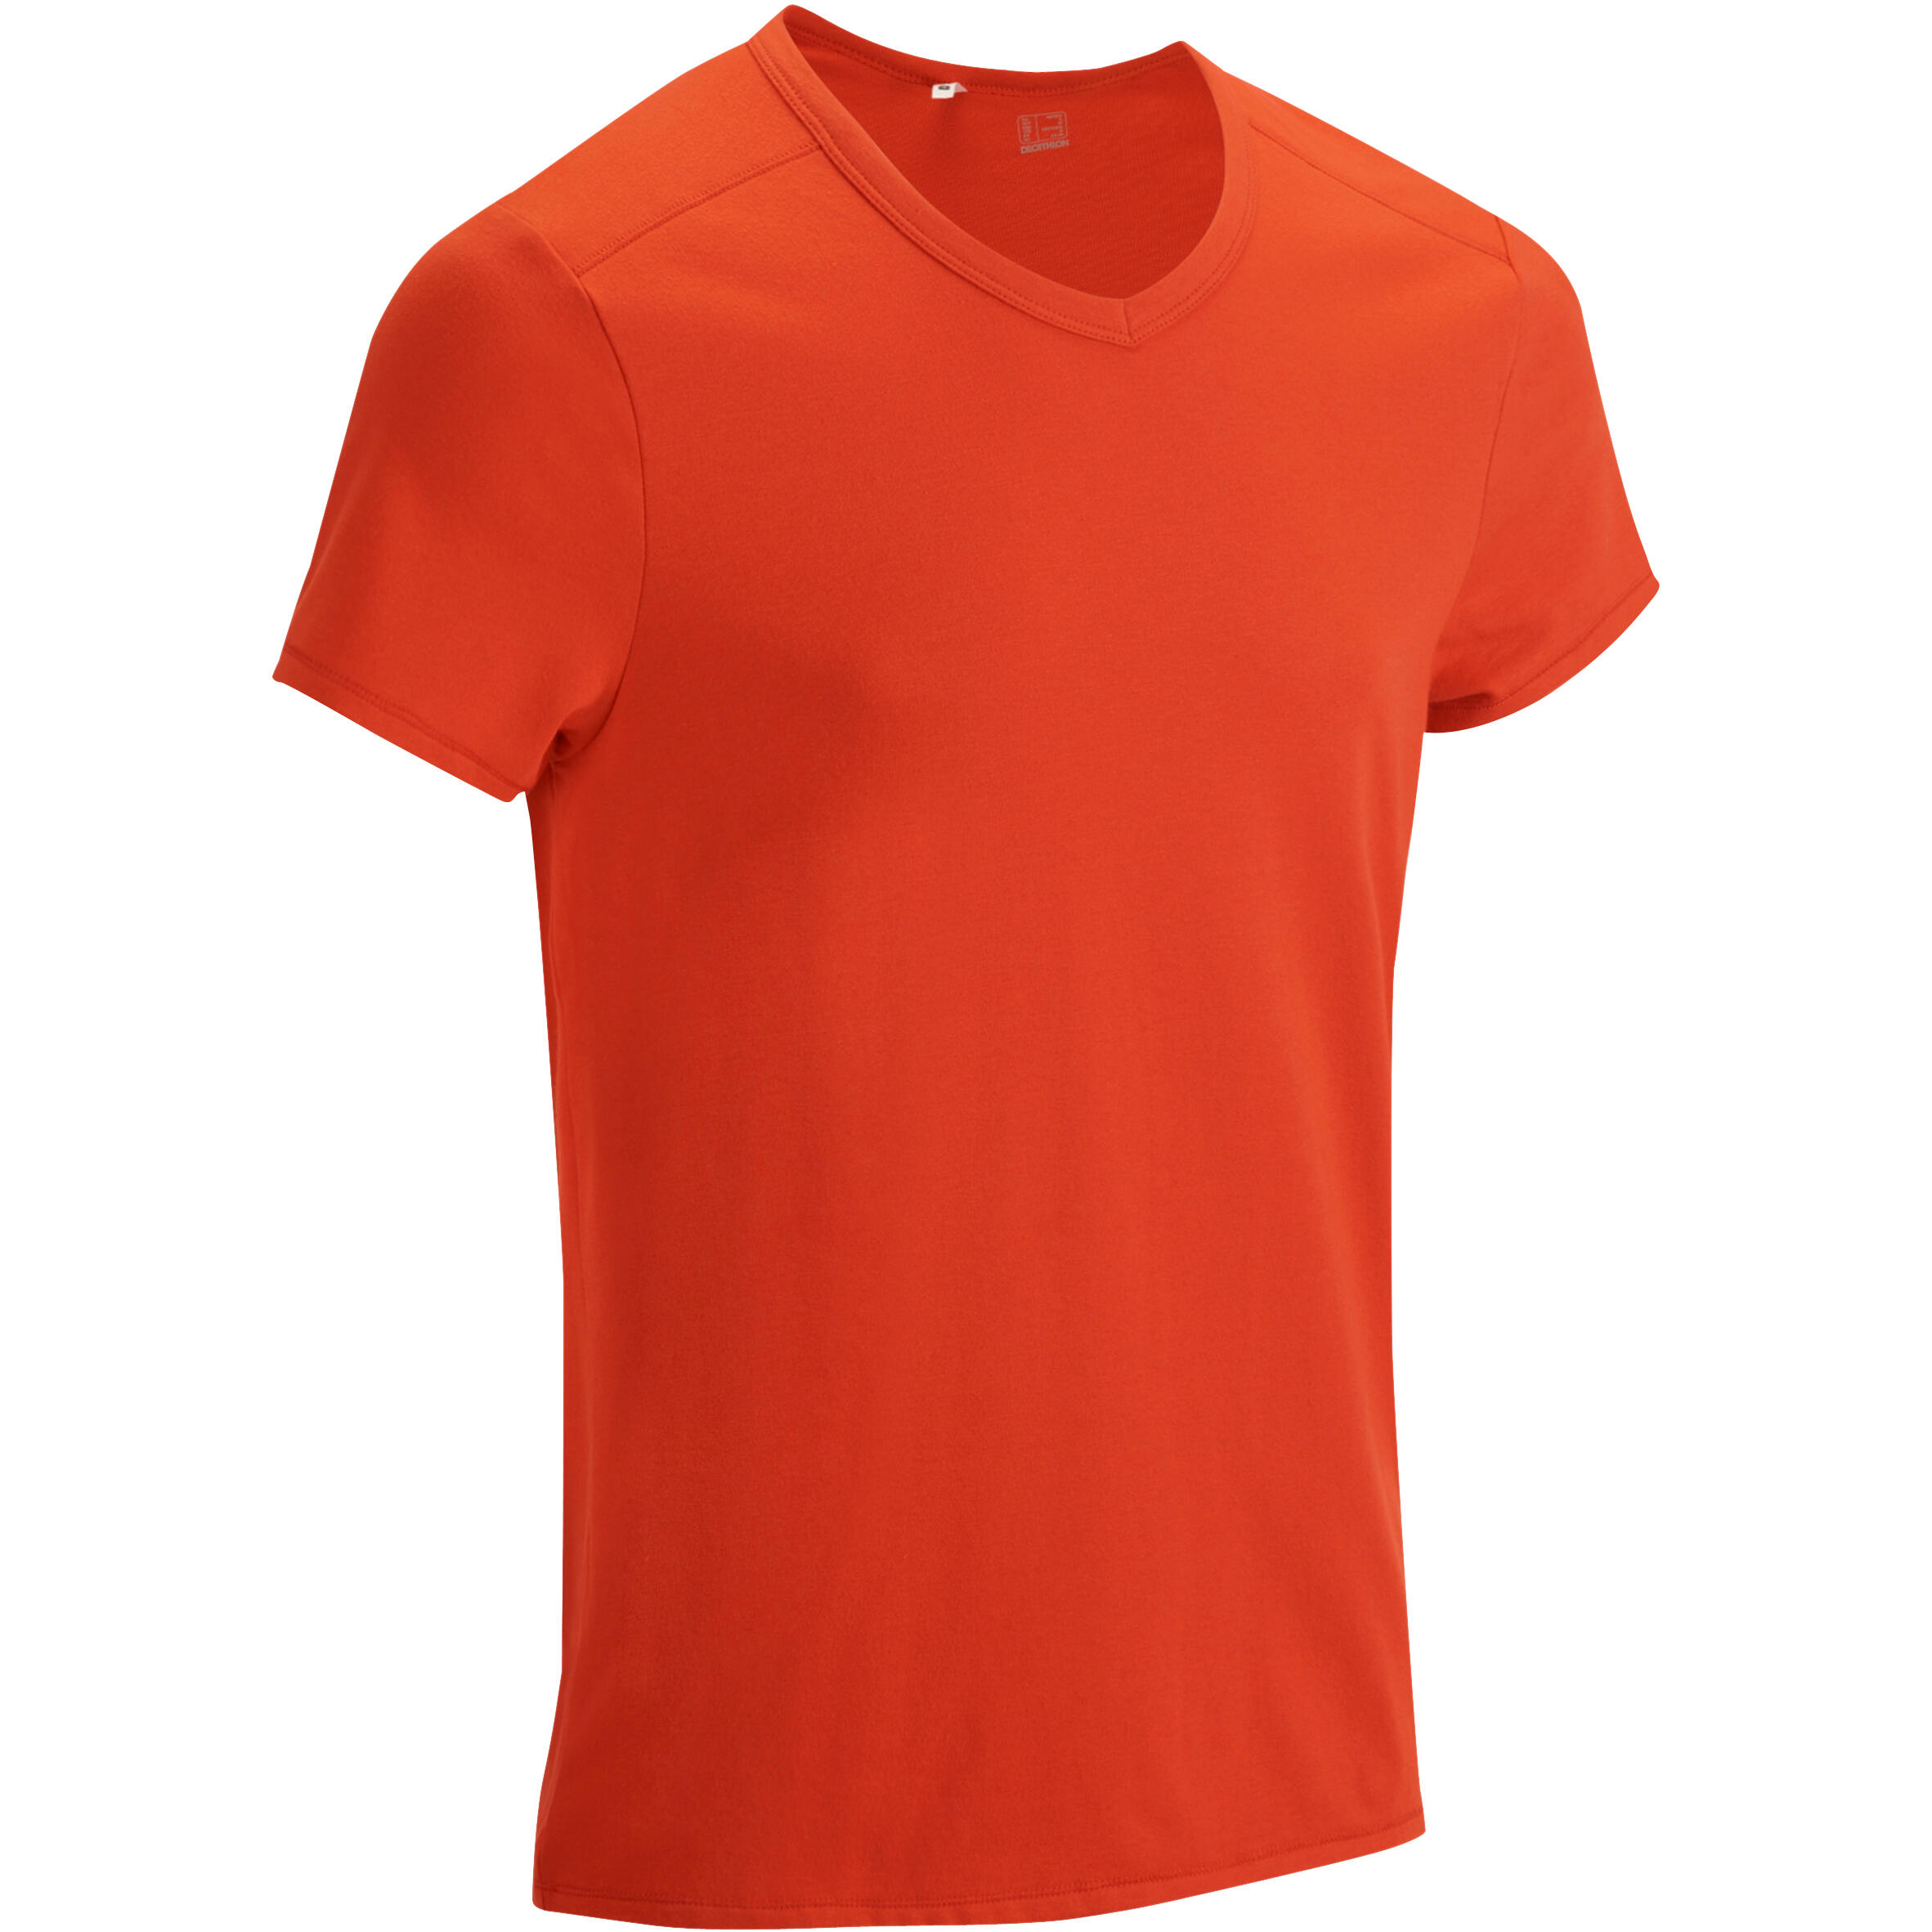 NYAMBA Active Short-Sleeved Slim-Fit Fitness T-Shirt - Dark Orange